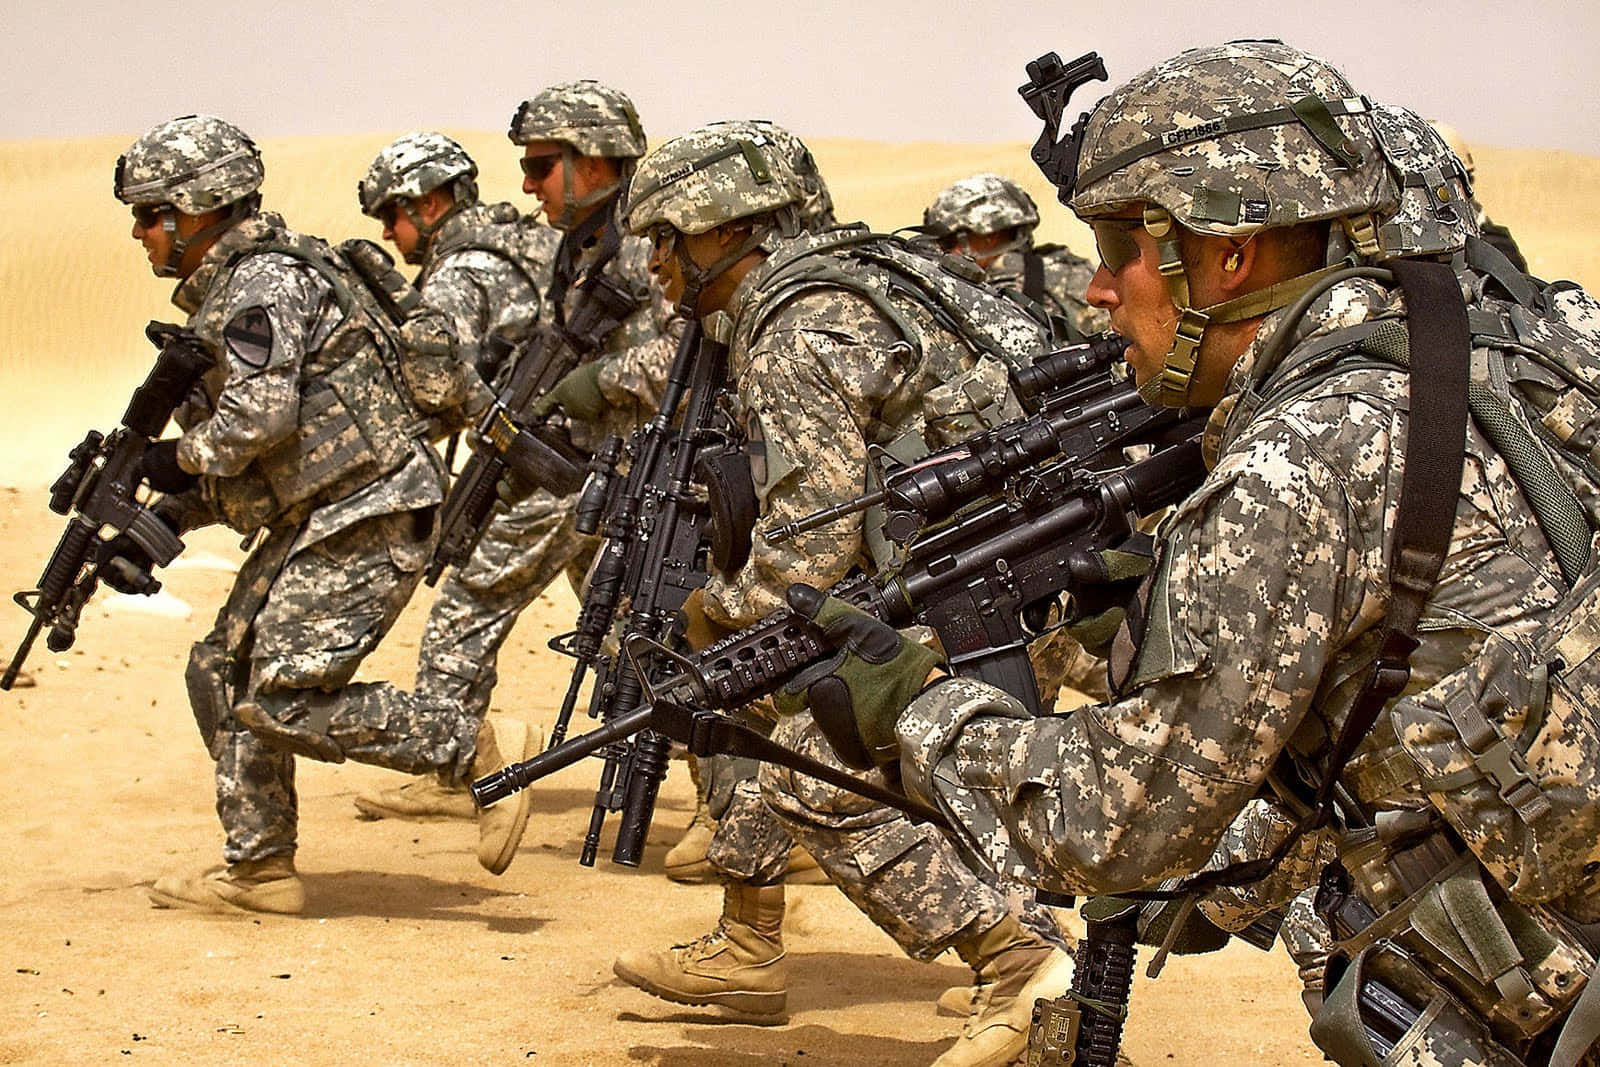 Soldat løber i ørkenbilleder